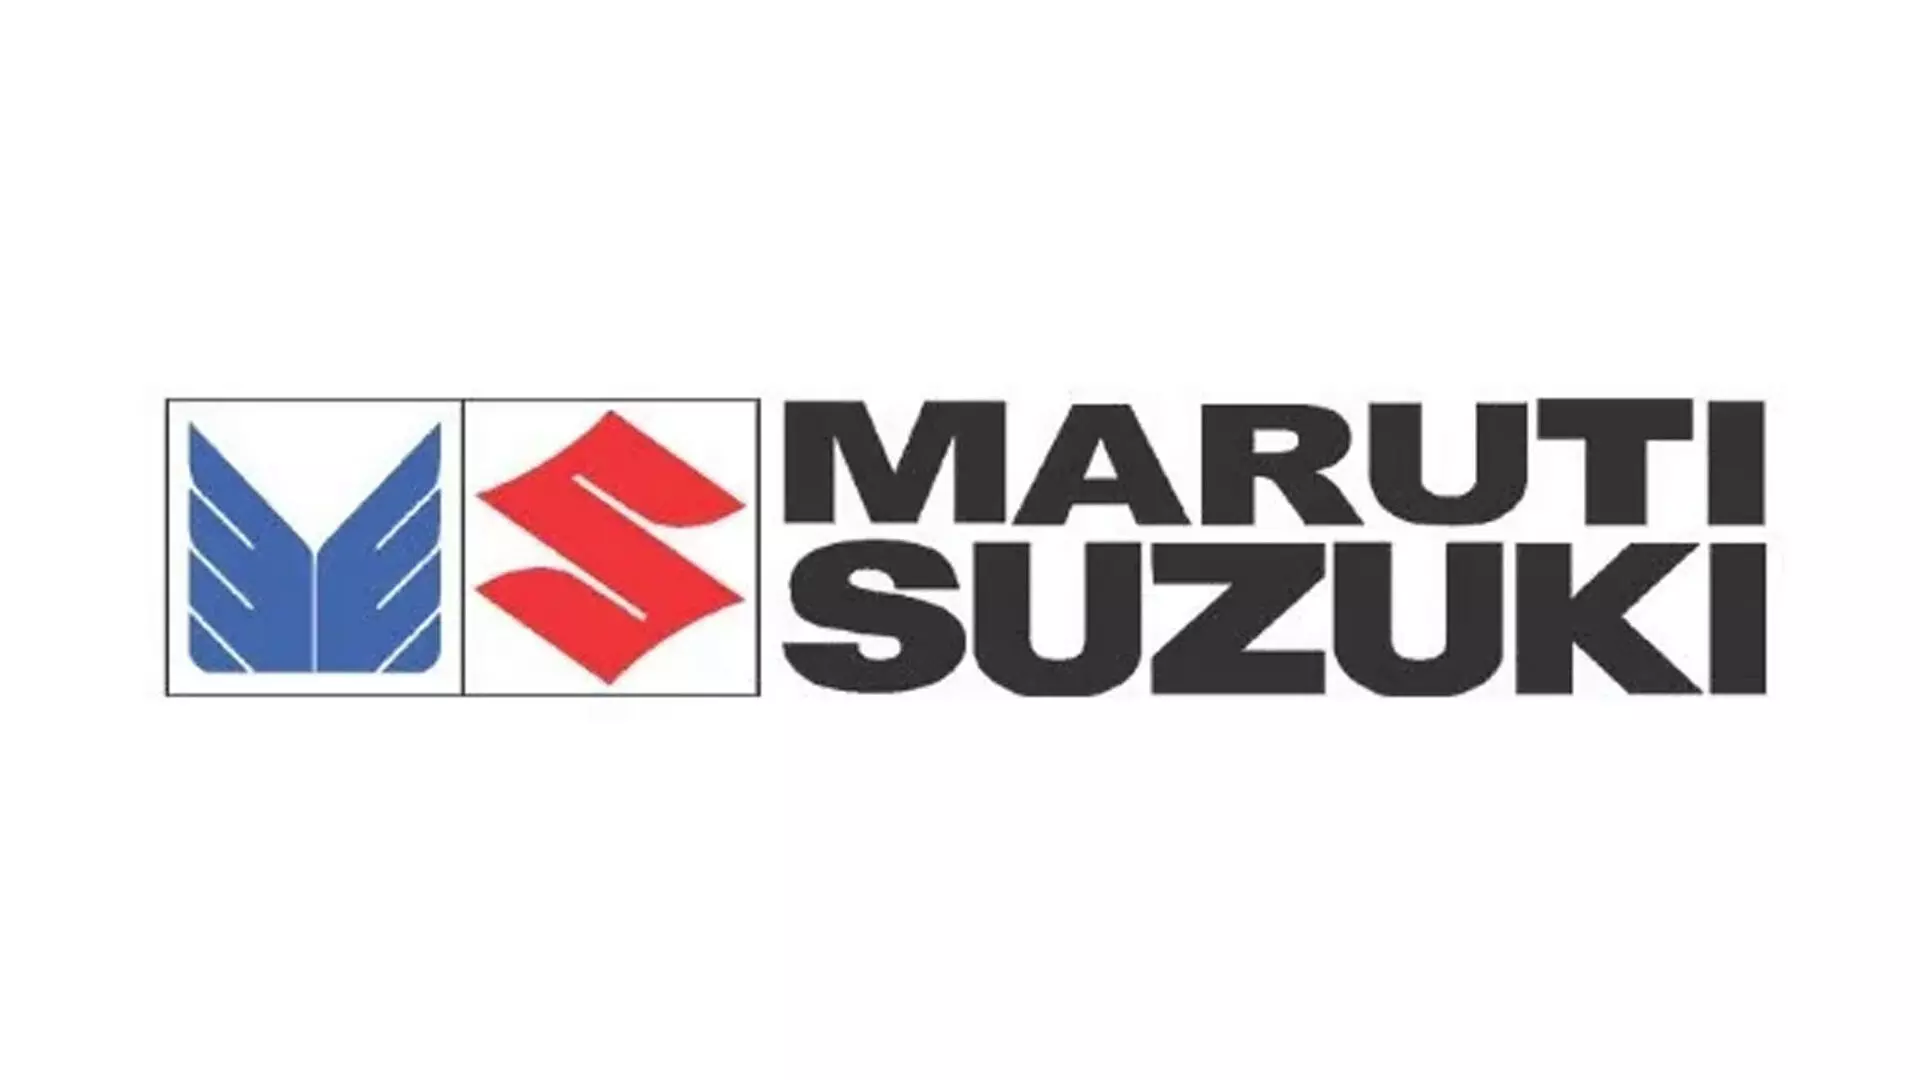 मारुति सुजुकी ने महत्वपूर्ण उपलब्धि हासिल की: उत्पादन में 3 करोड़ इकाइयों को पार किया